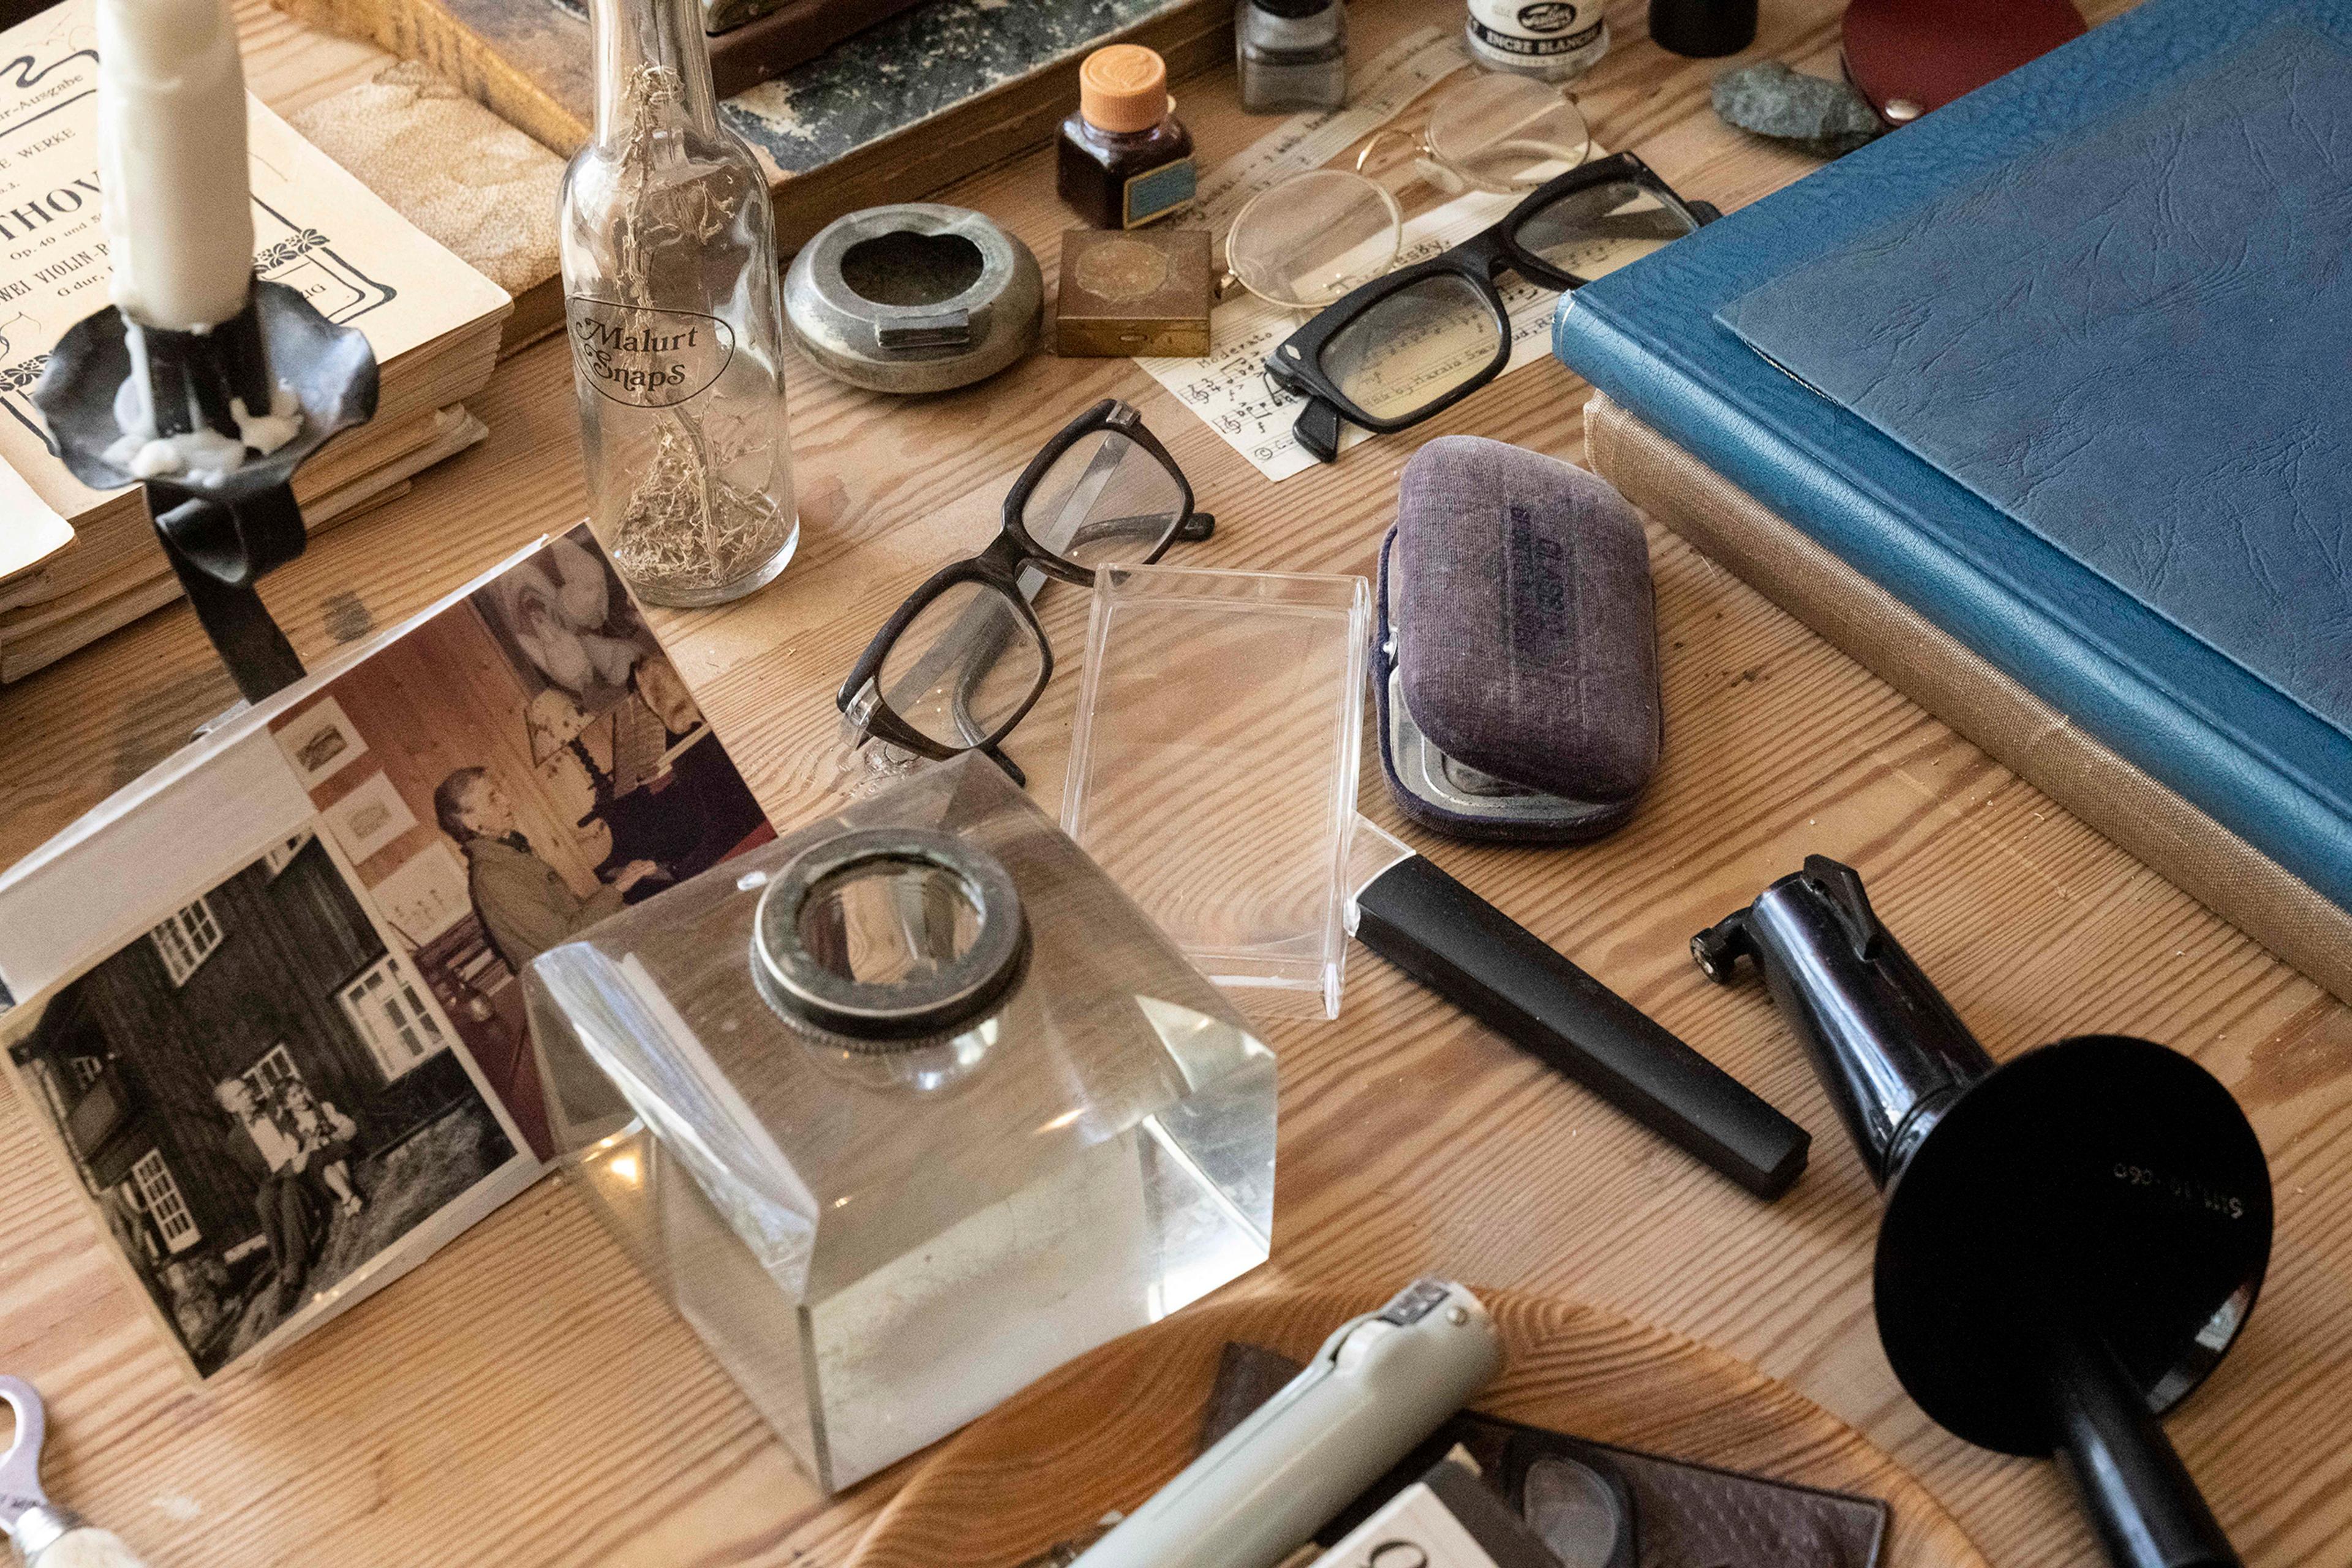 Detaljer fra arbeidsbordet til Harald Sæverud. Vi ser blant annet en liten flaske med en urt oppi, flere brillepar og fotografier.